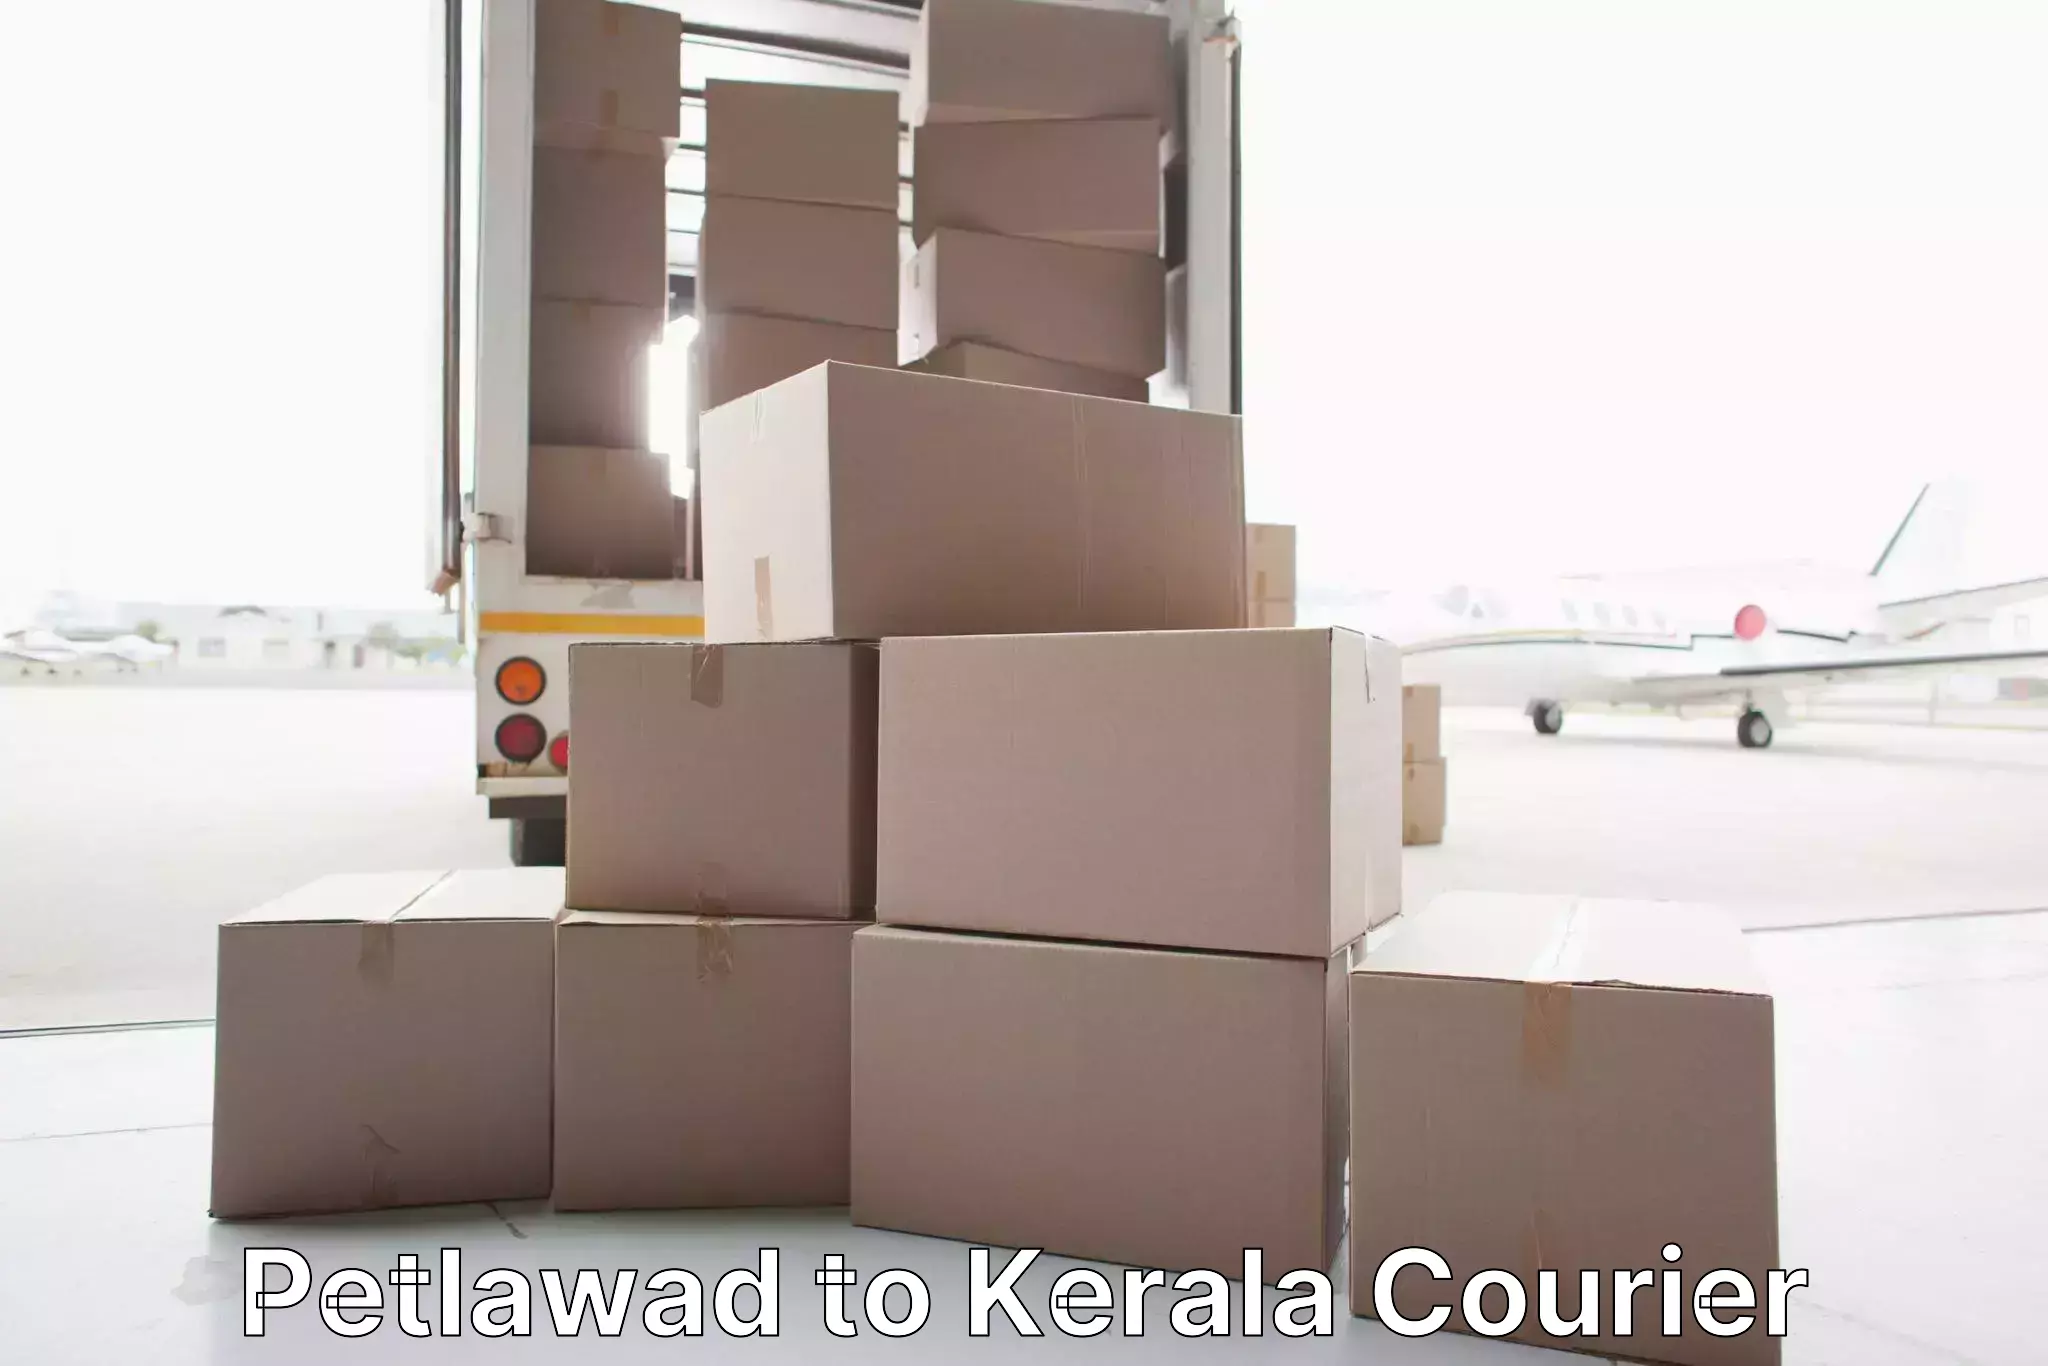 Skilled furniture transport Petlawad to Kerala